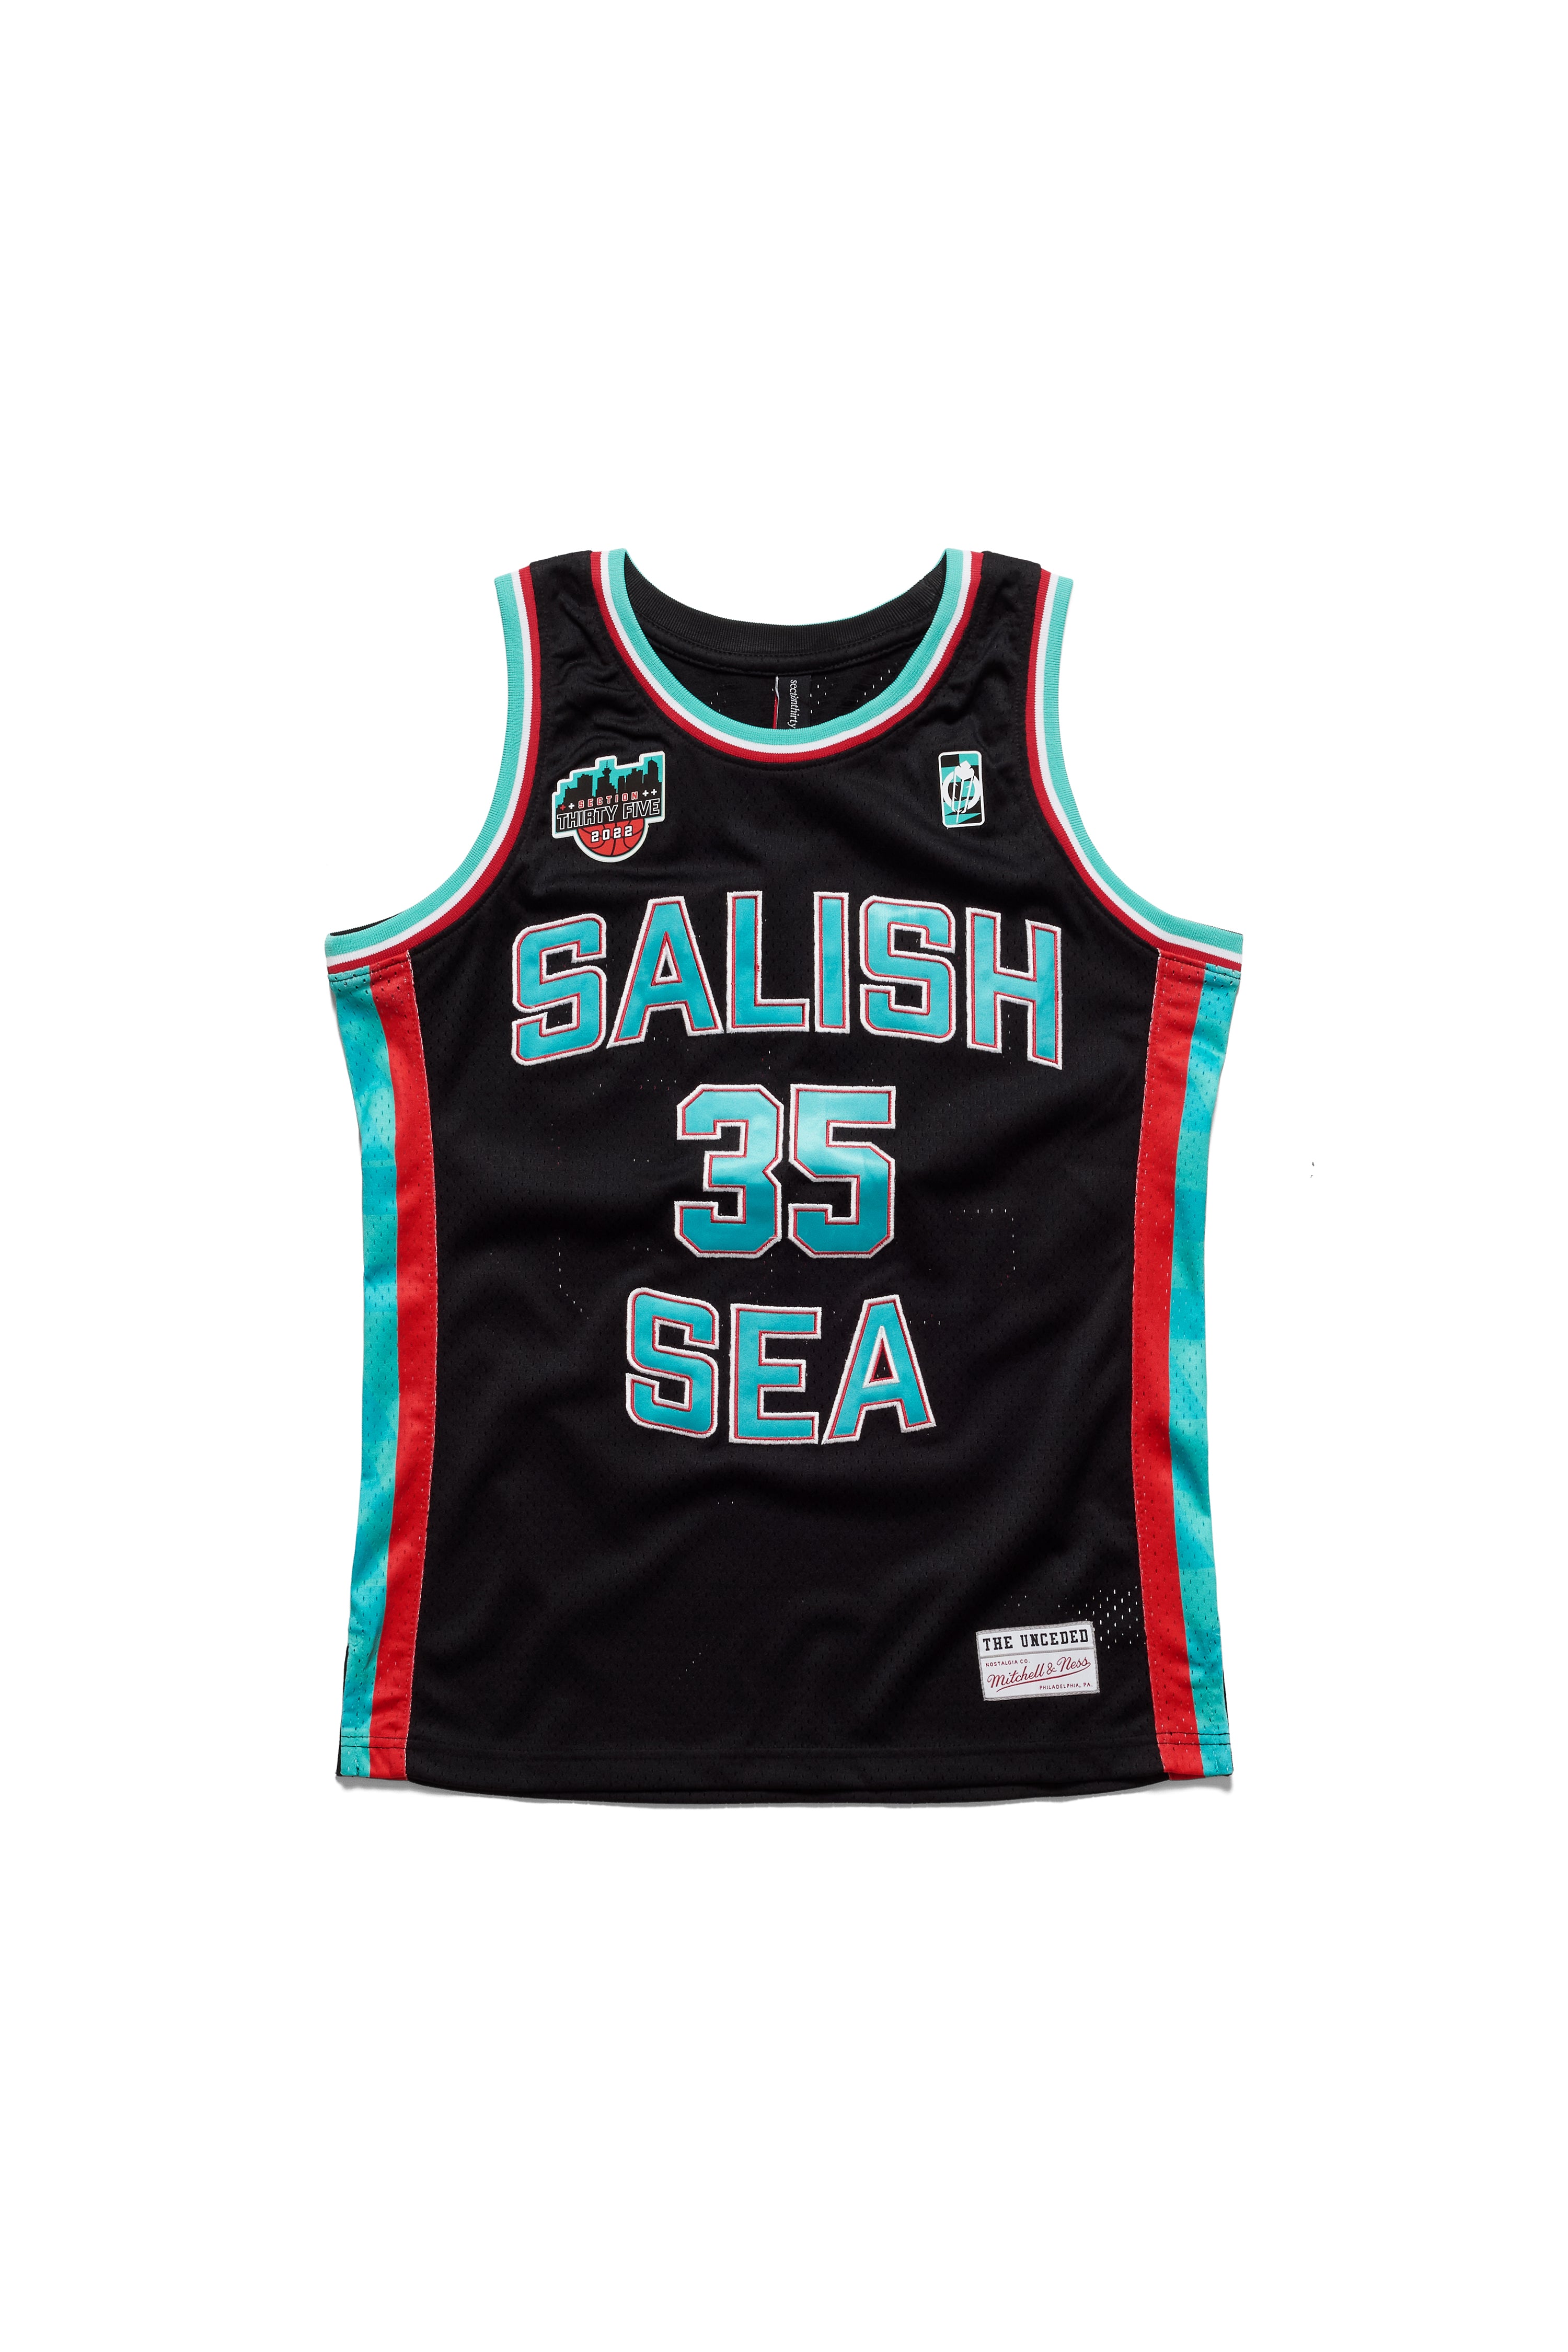 Salish Sea Black Swingman Jersey by Mitchell & Ness – SECTION 35